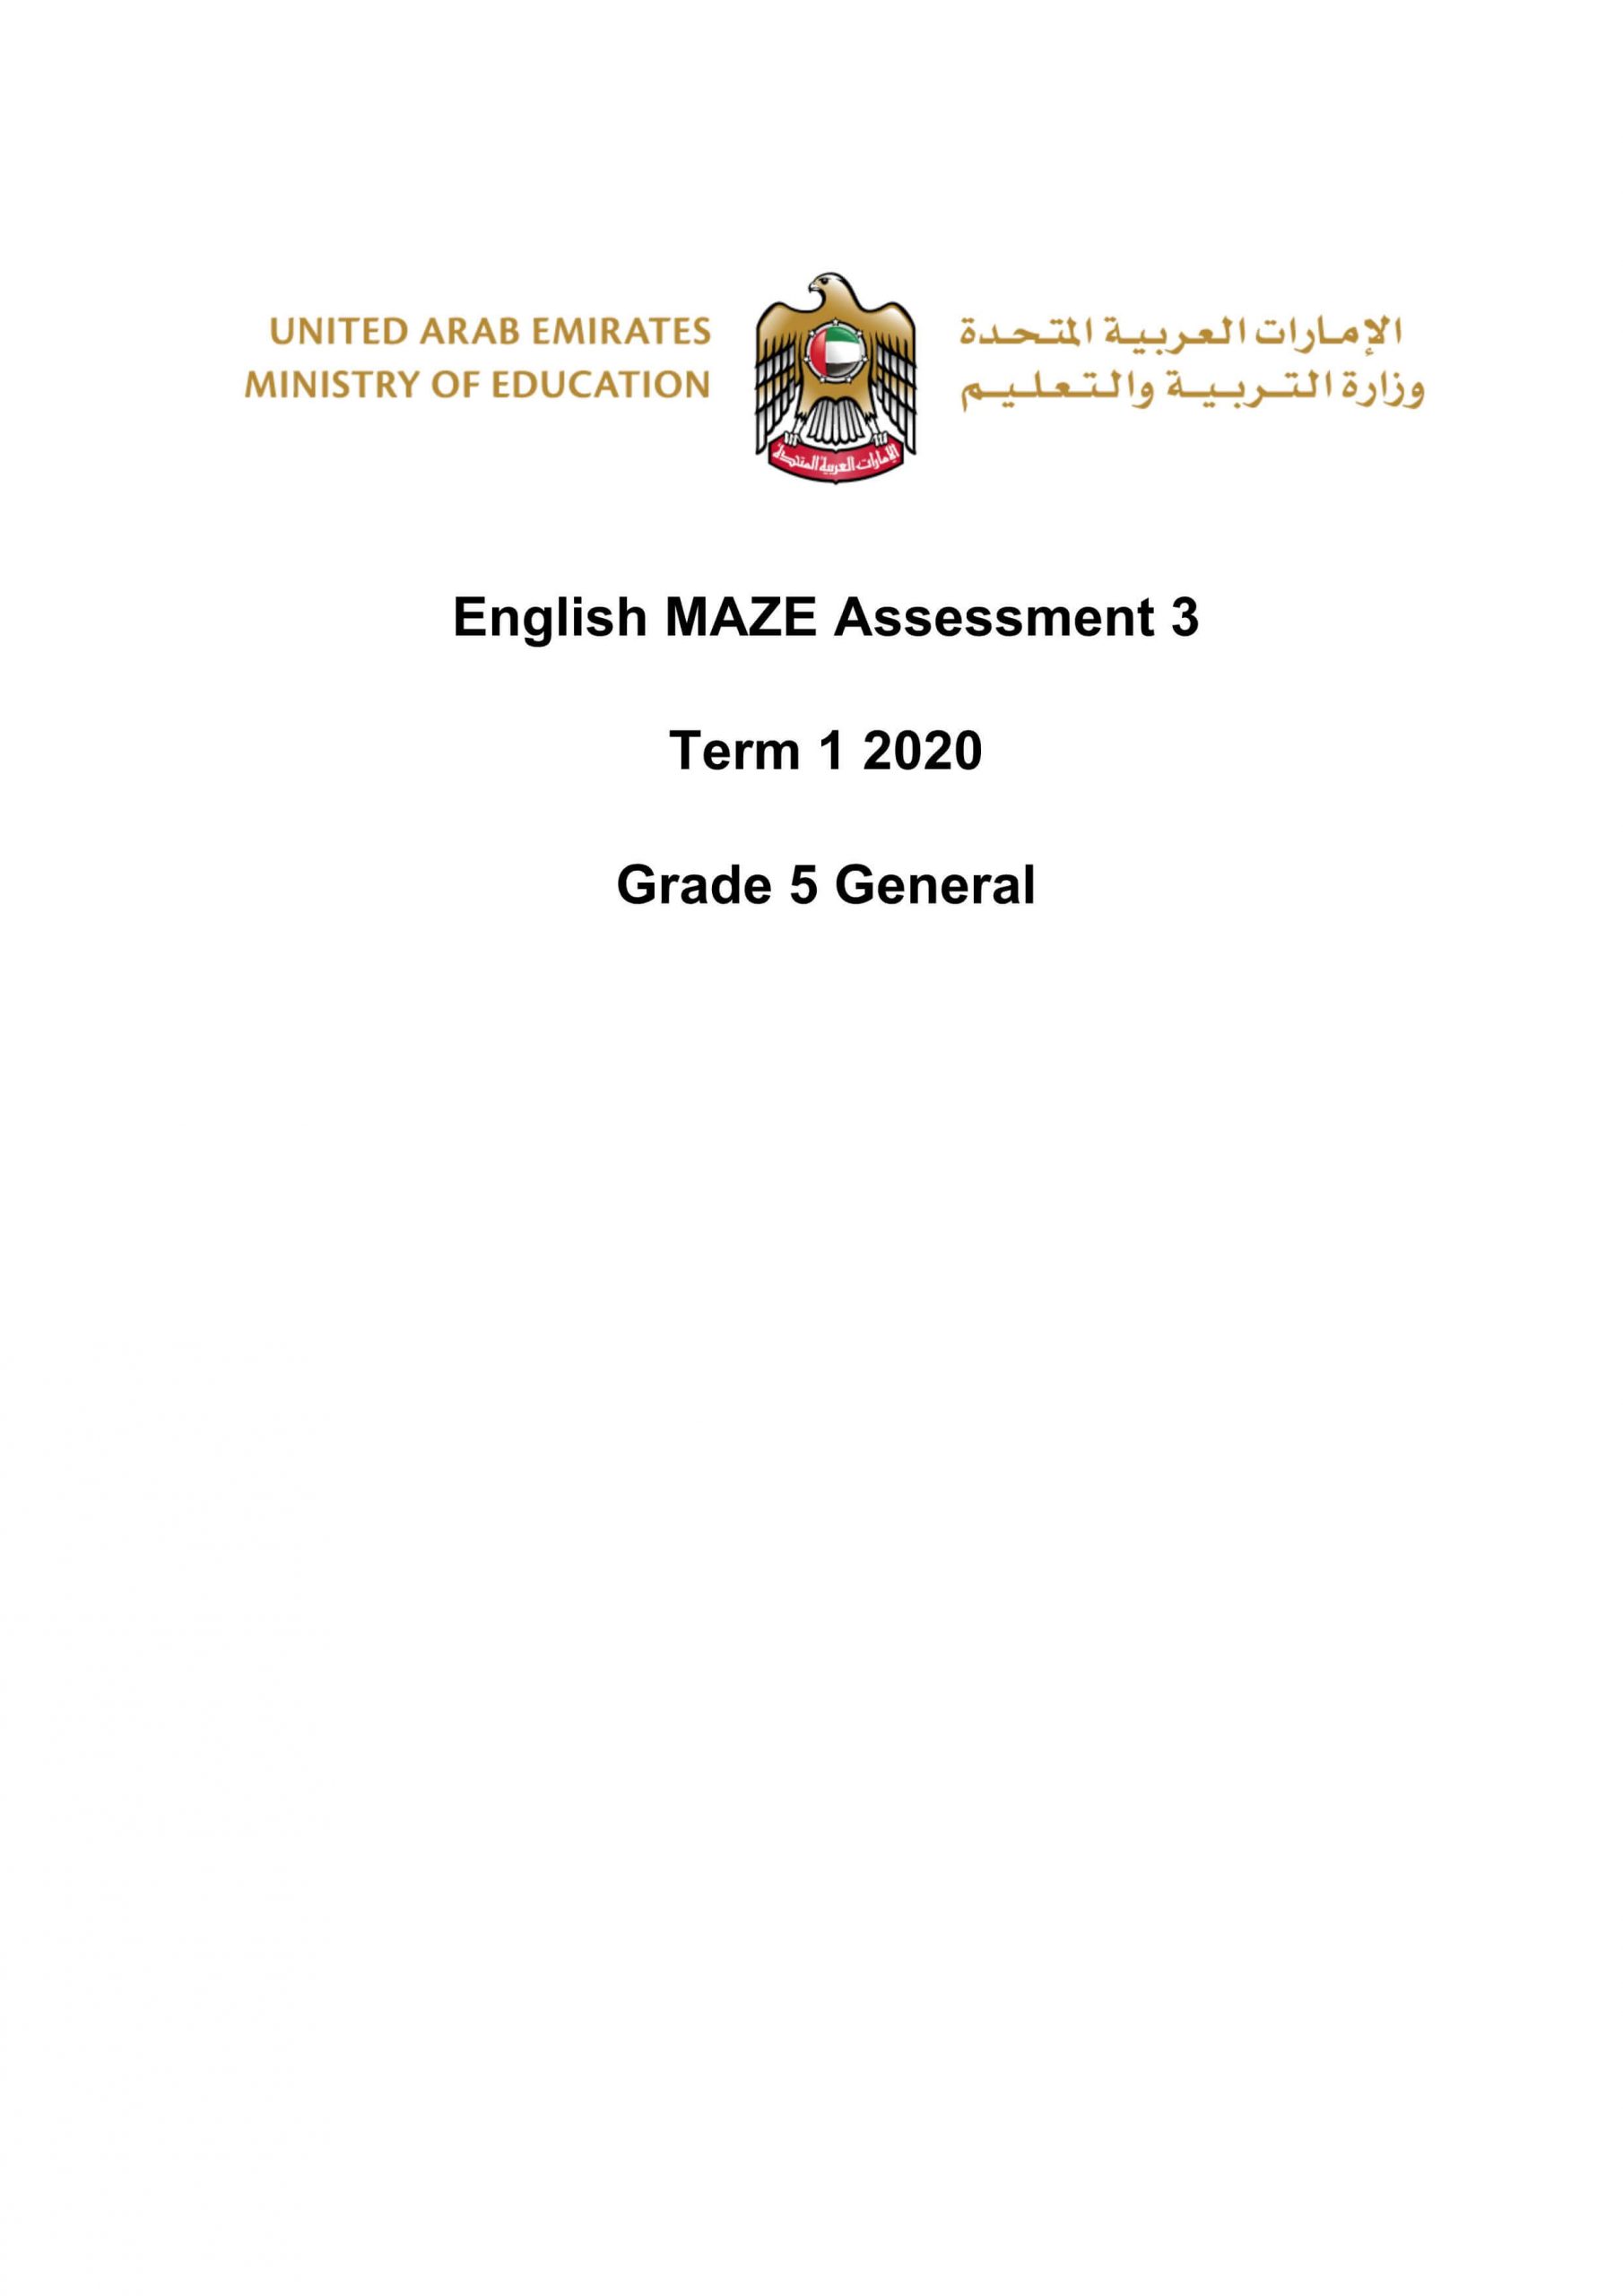 حل اوراق عمل MAZE Assessment الصف الخامس مادة اللغة الانجليزية